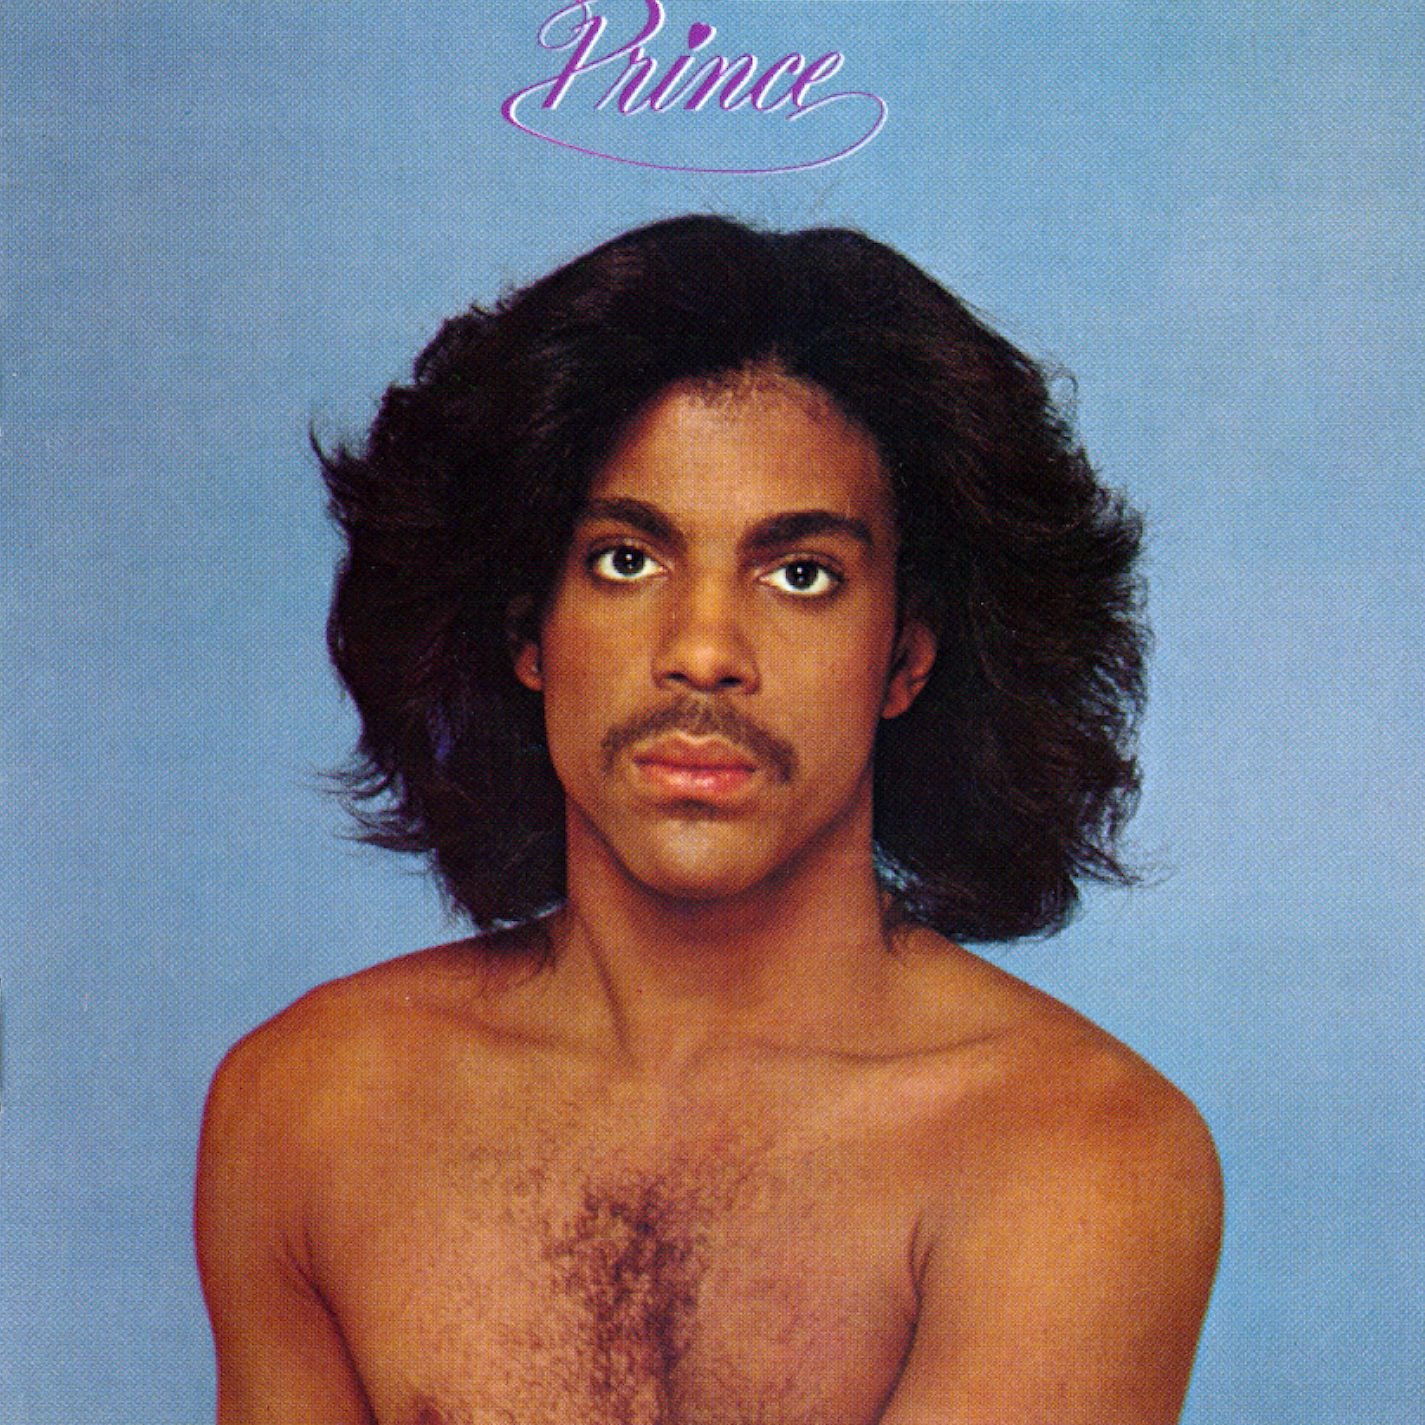 Prince "Prince" LP